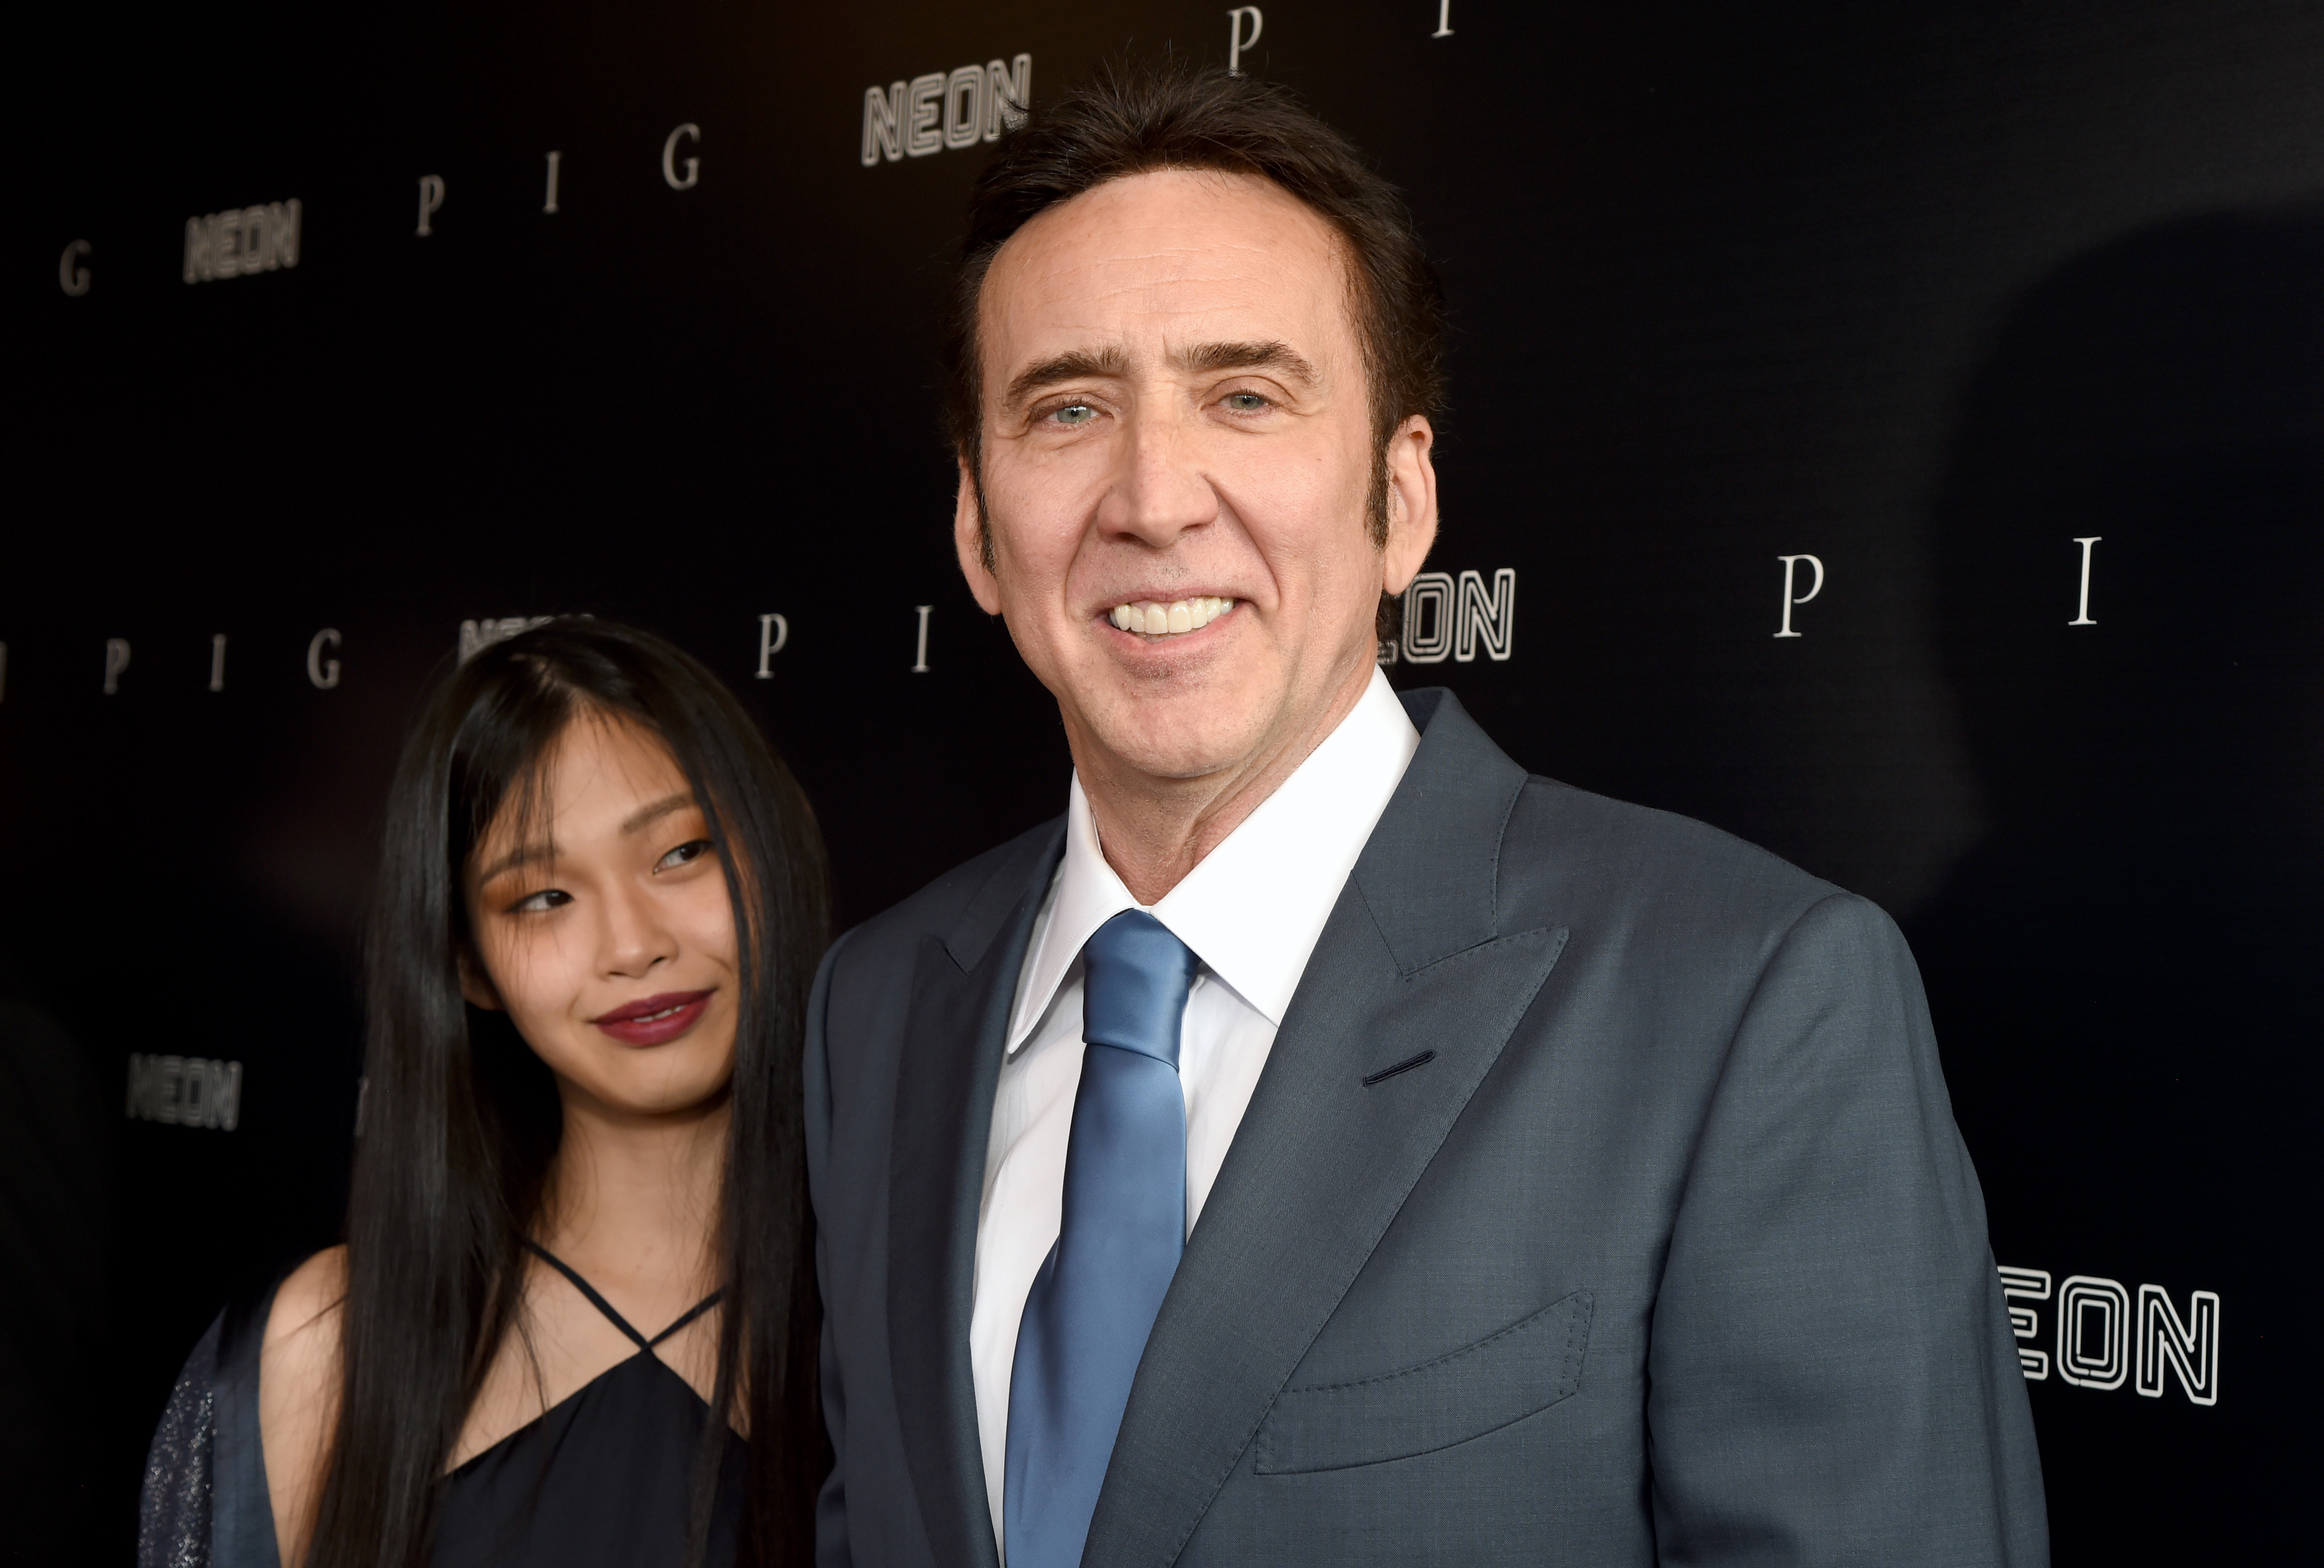 Riko Shibata y Nicolas Cage en el estreno en neón de "PIG" el 13 de julio de 2021, en Los Ángeles, California | Foto: Getty Images